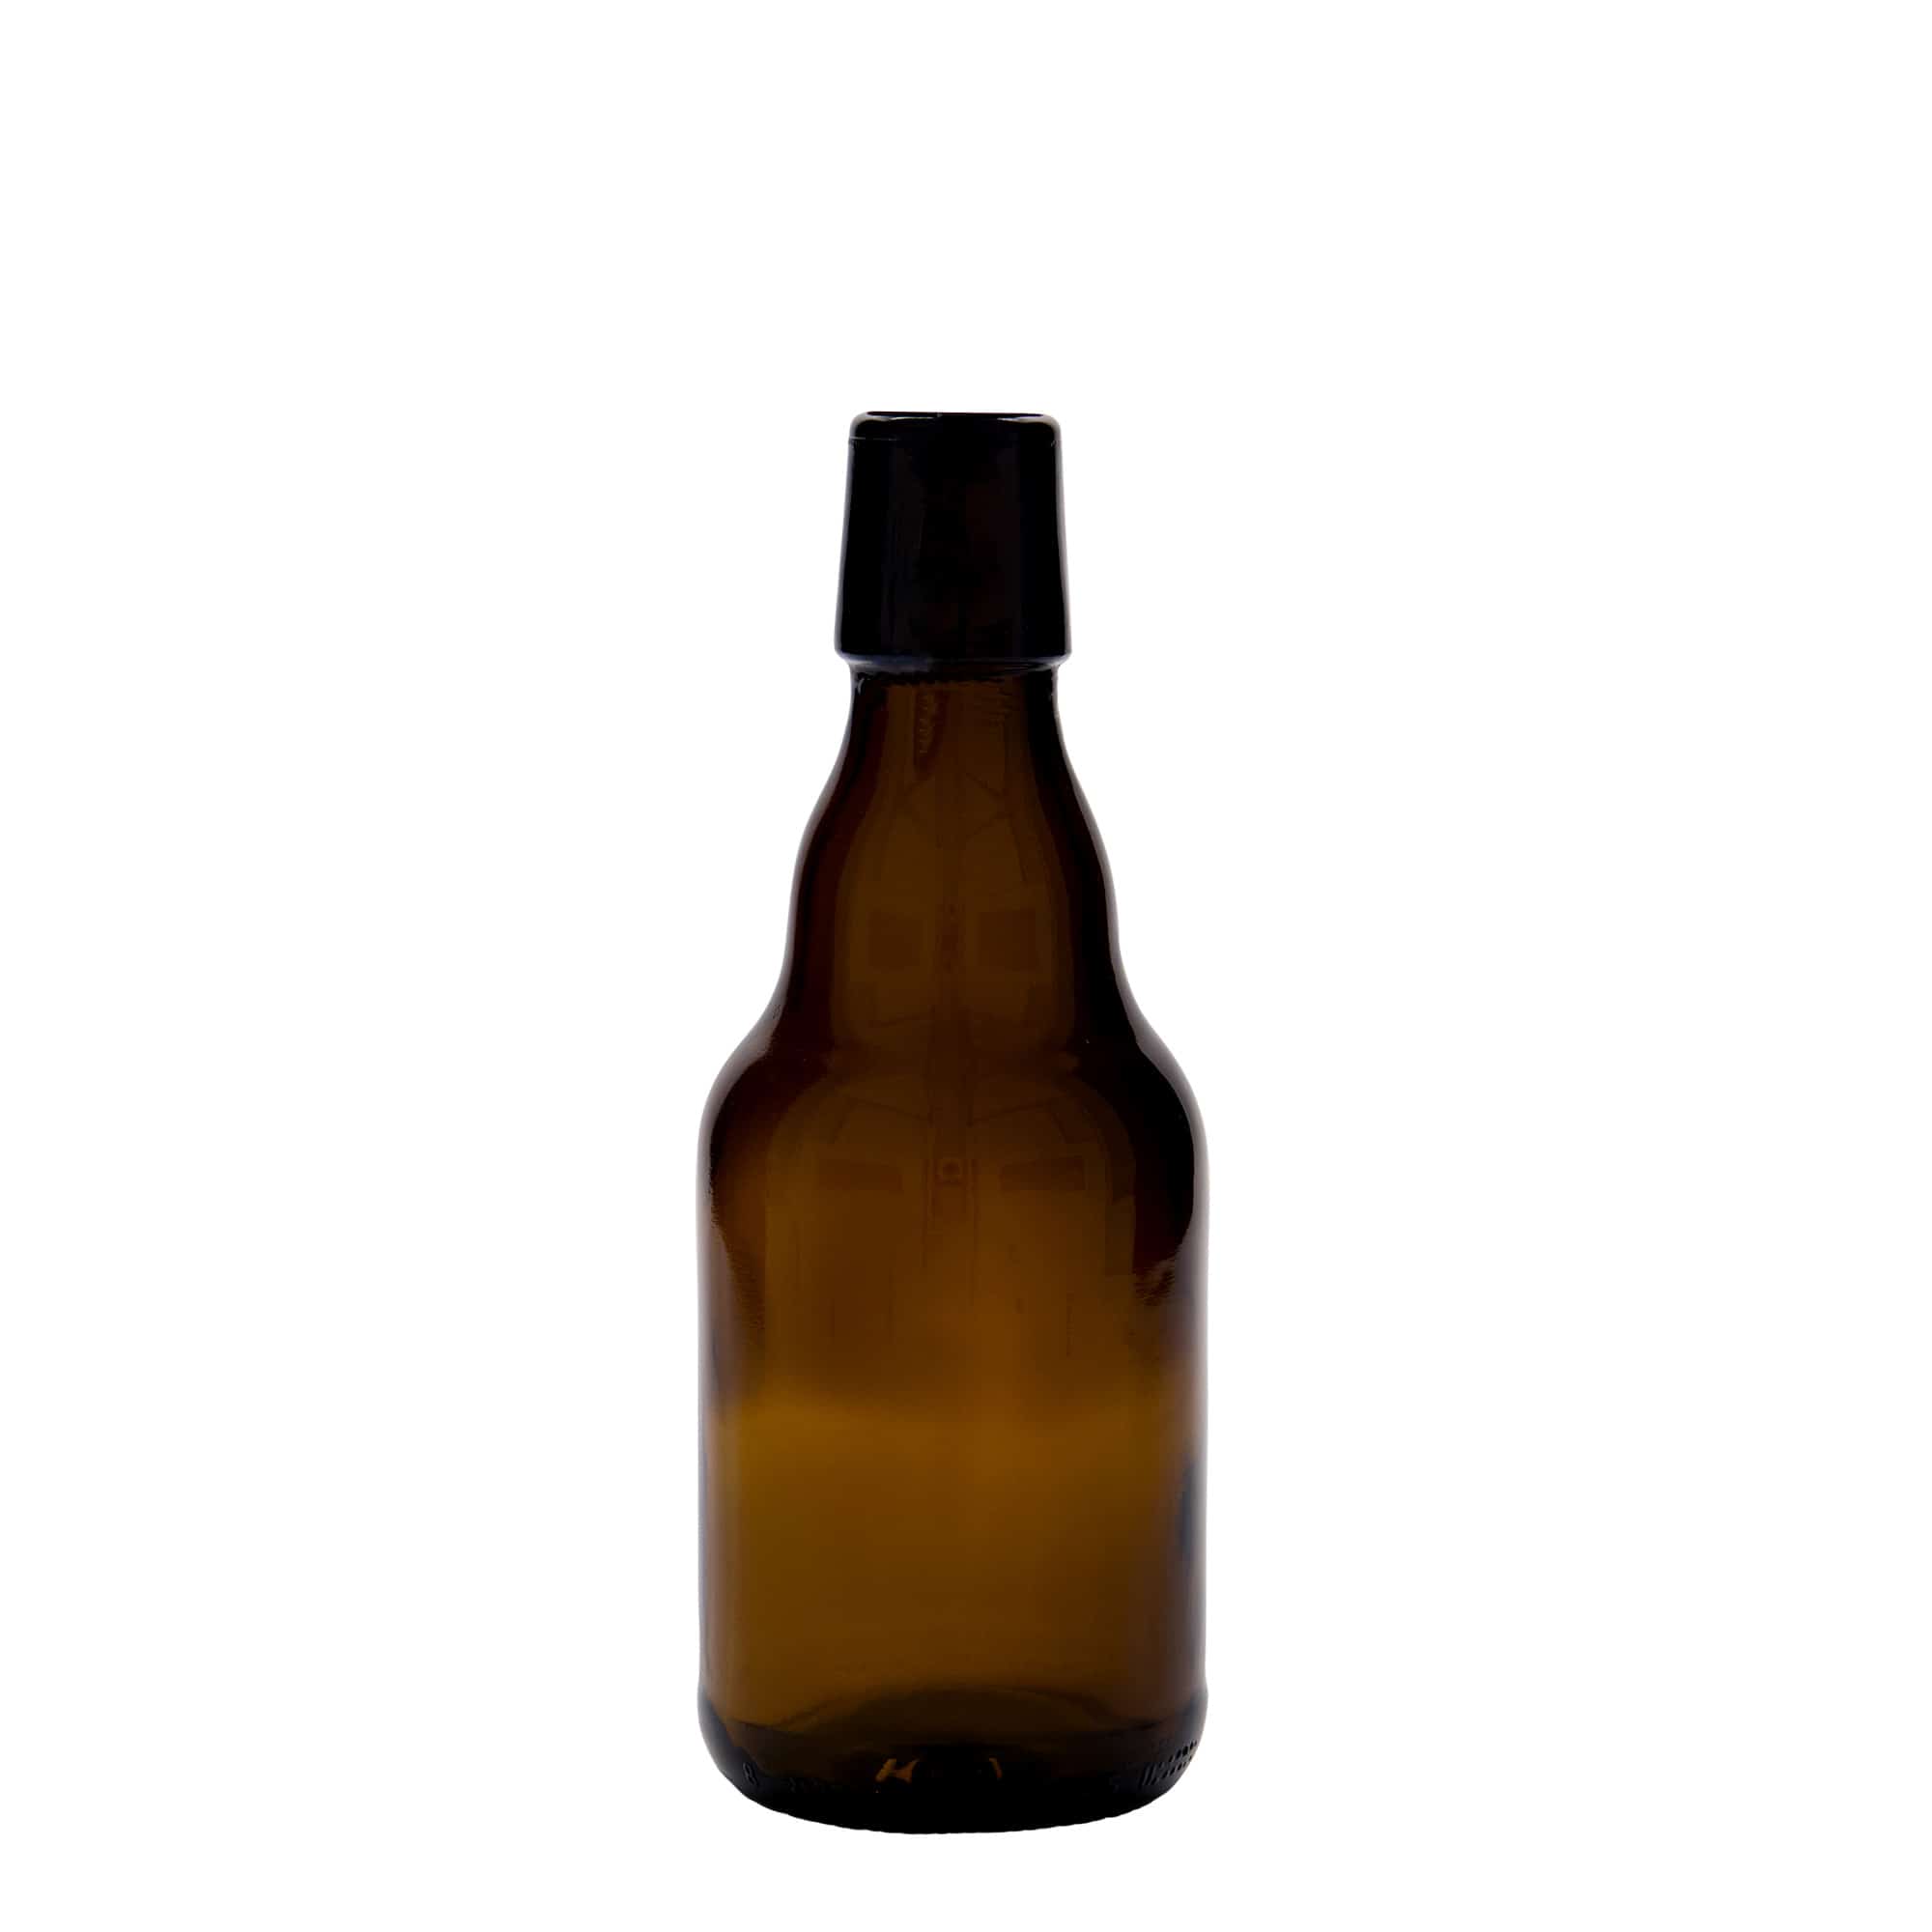 330 ml beer bottle 'Steinie', glass, brown, closure: swing top